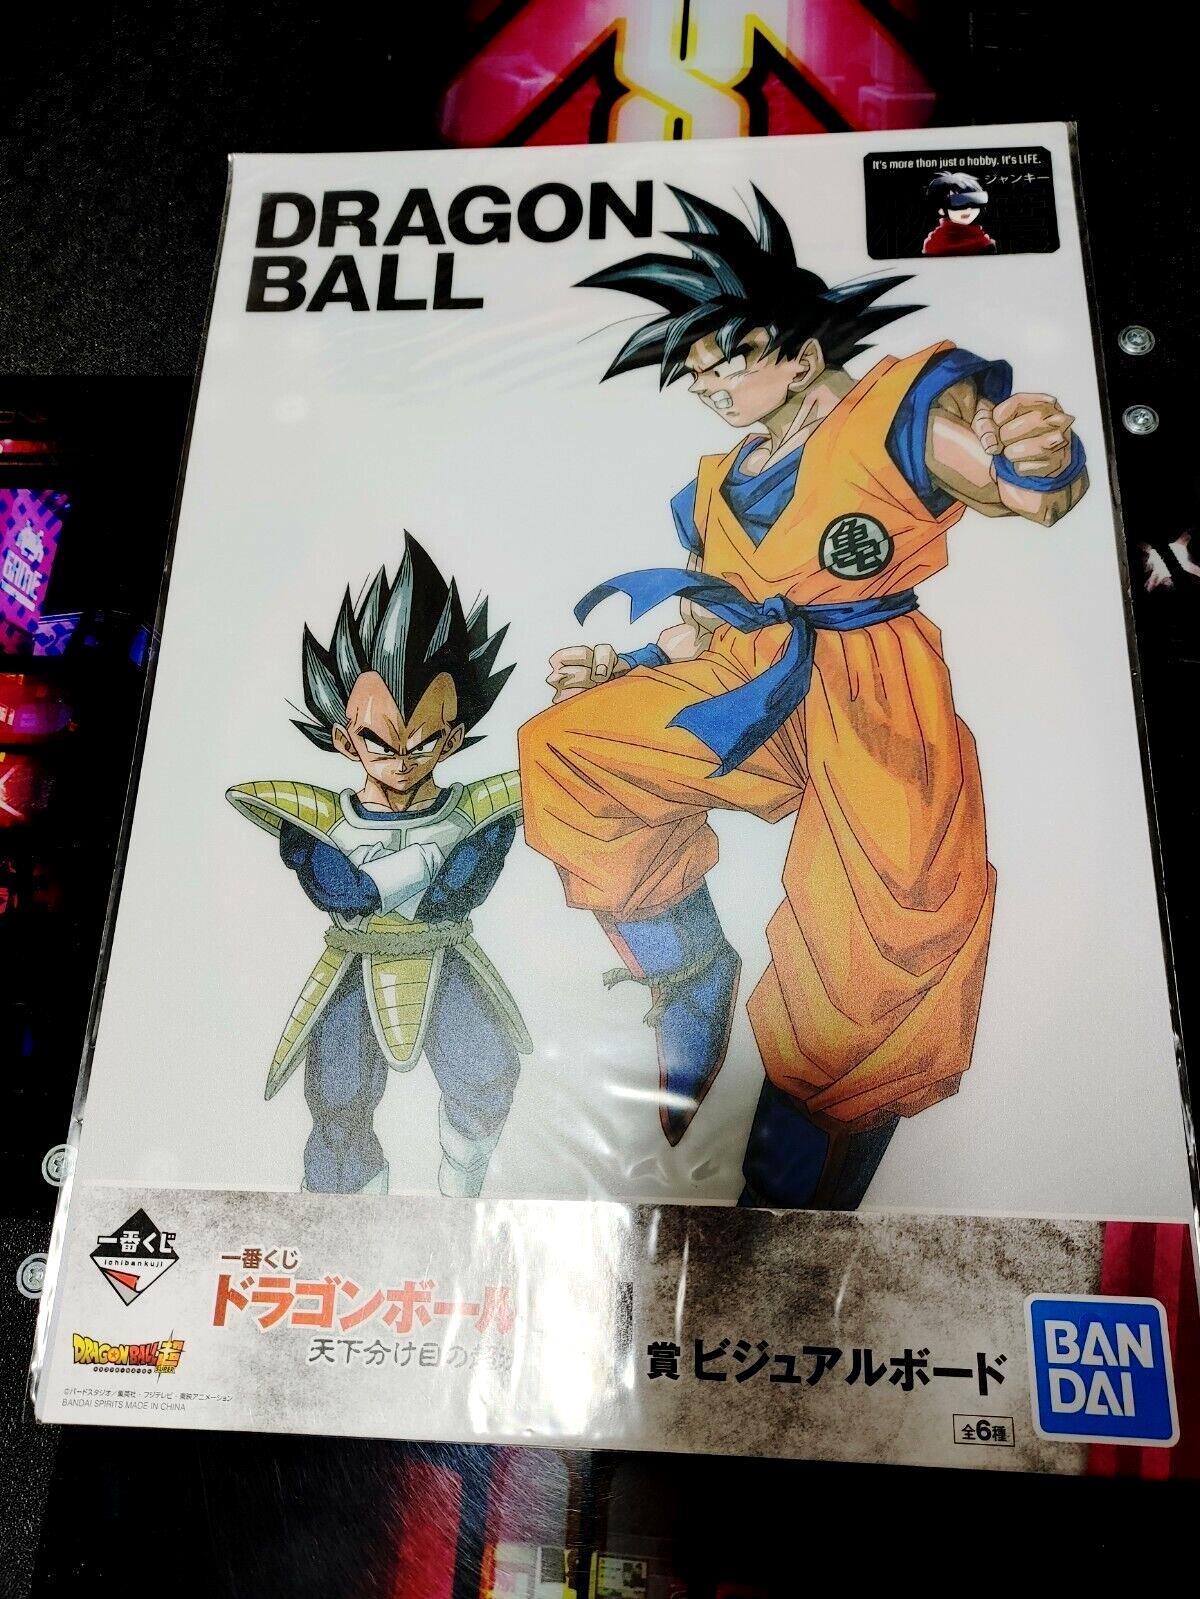 Anime Dragon ball Animation Design Visual Board Goku Vegeta I Japan Limited